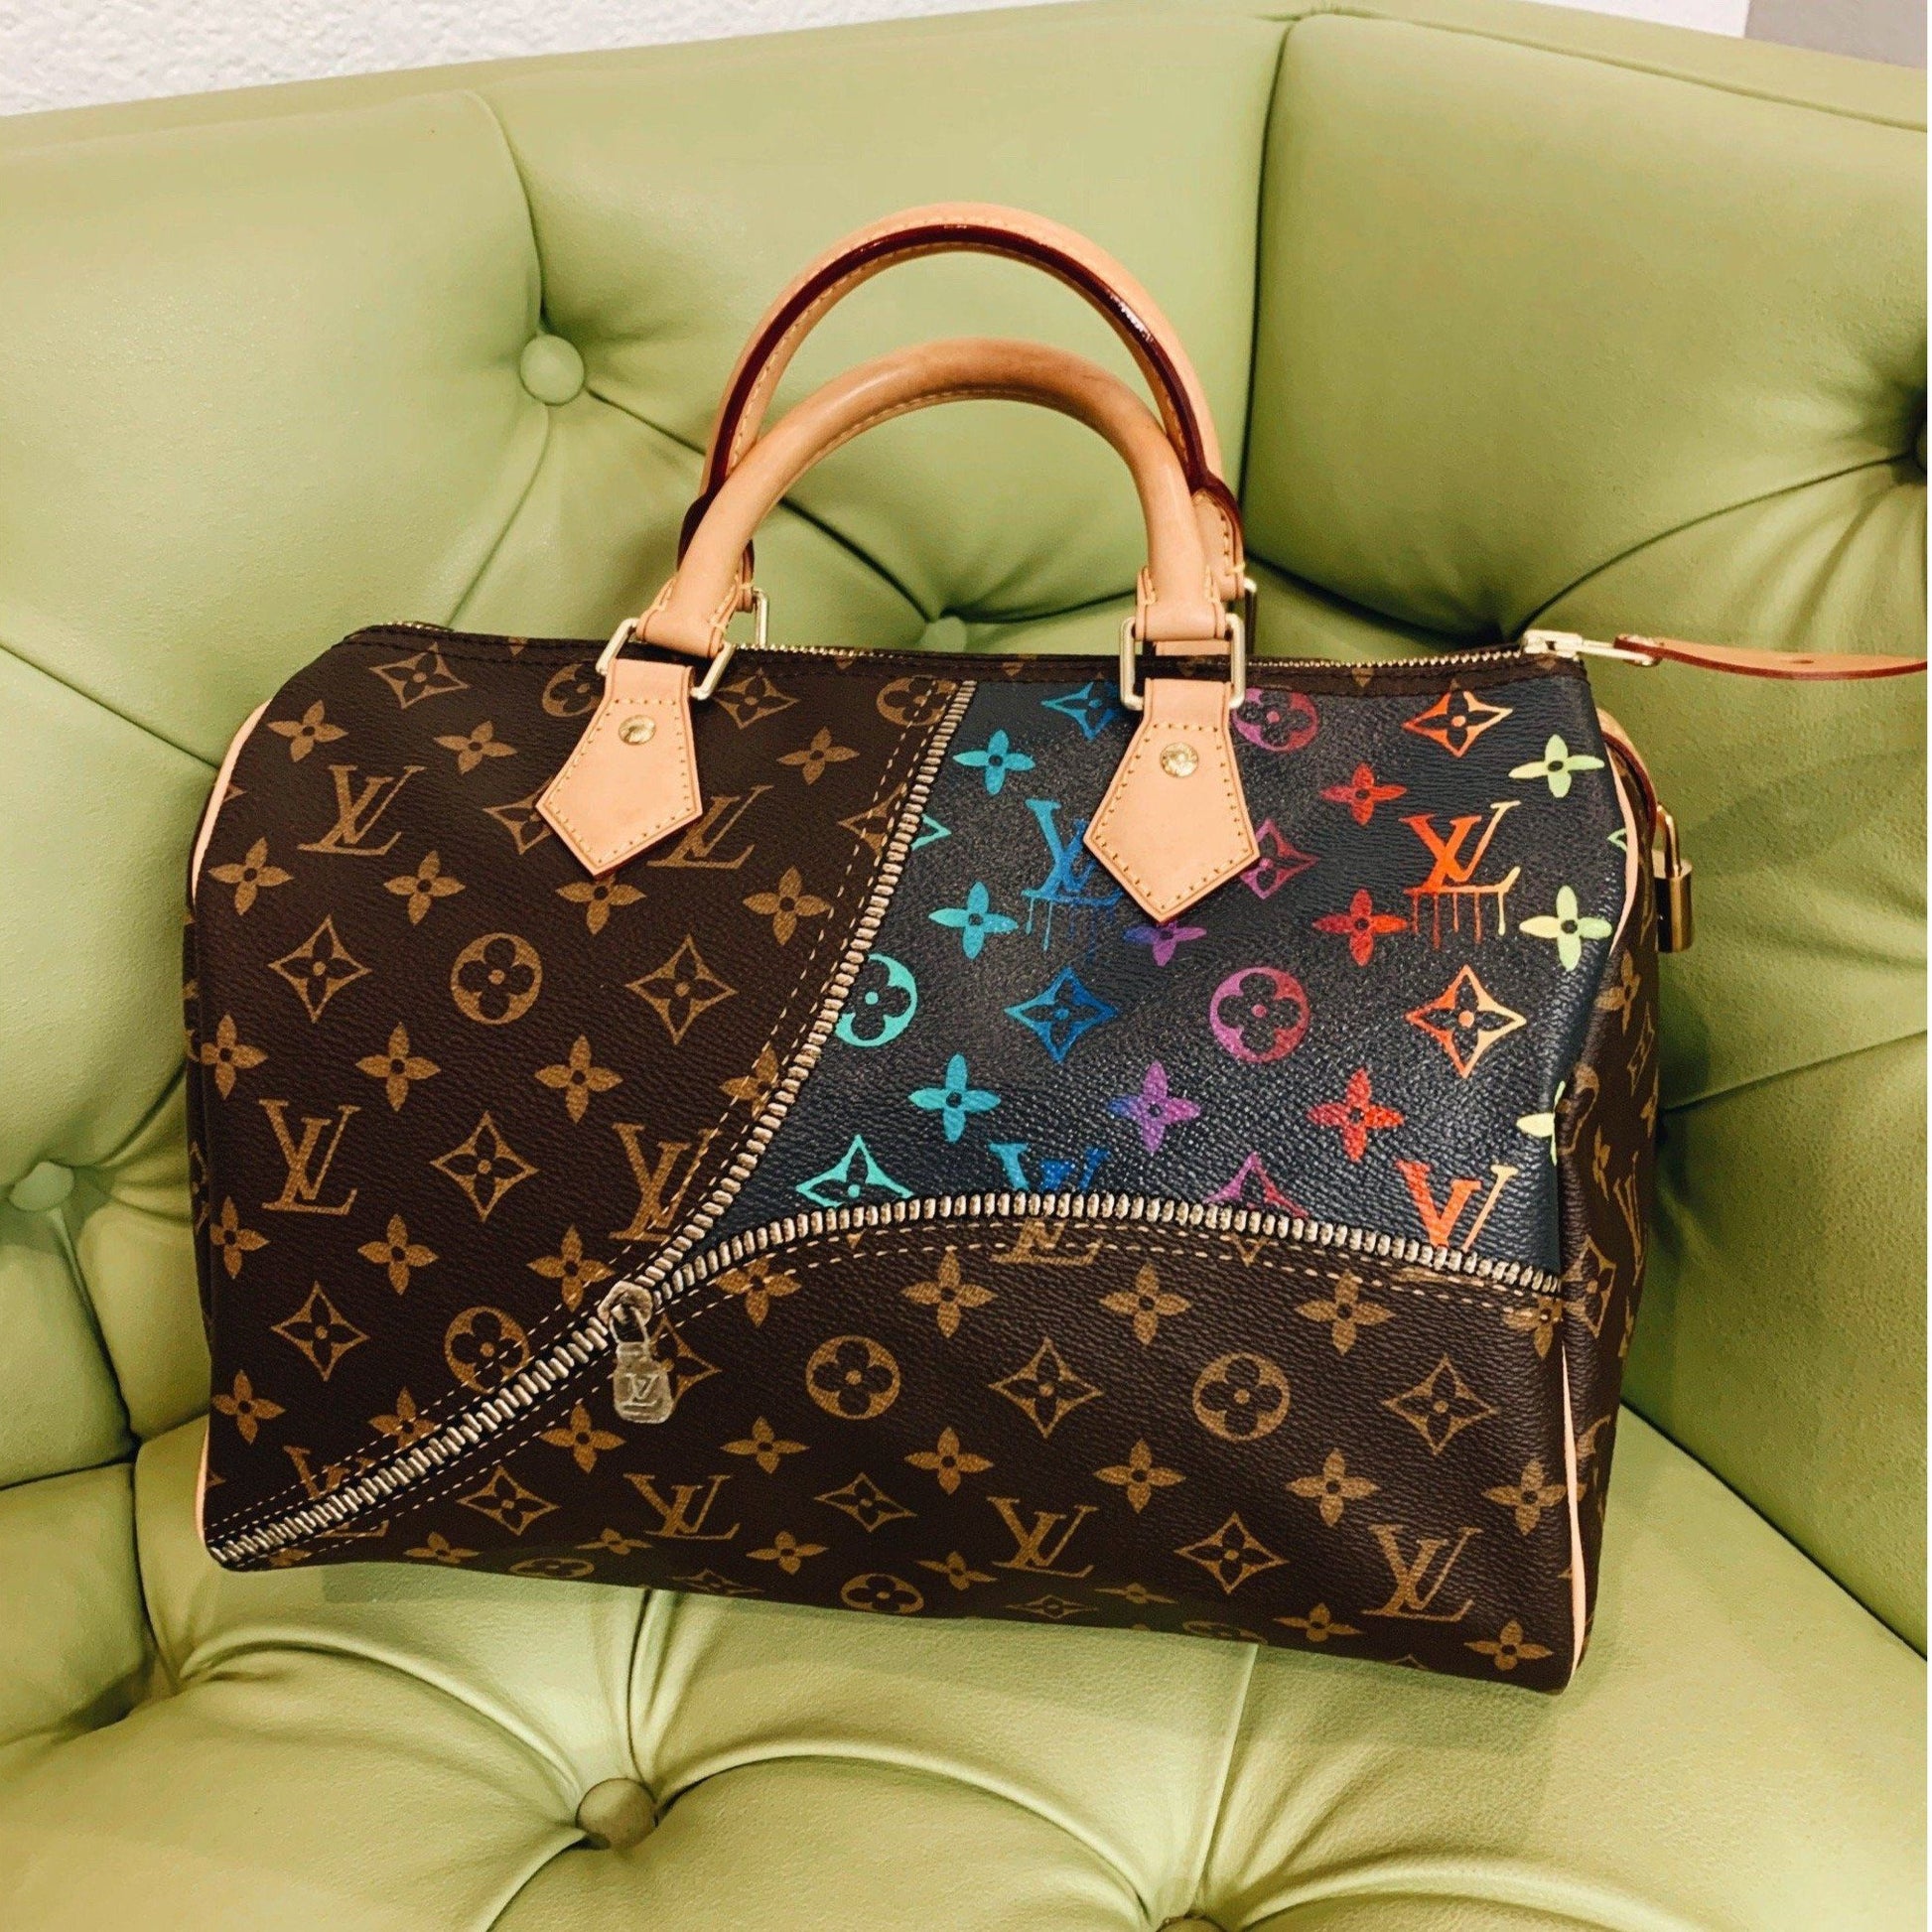 Painted Louis Vuitton Bag 